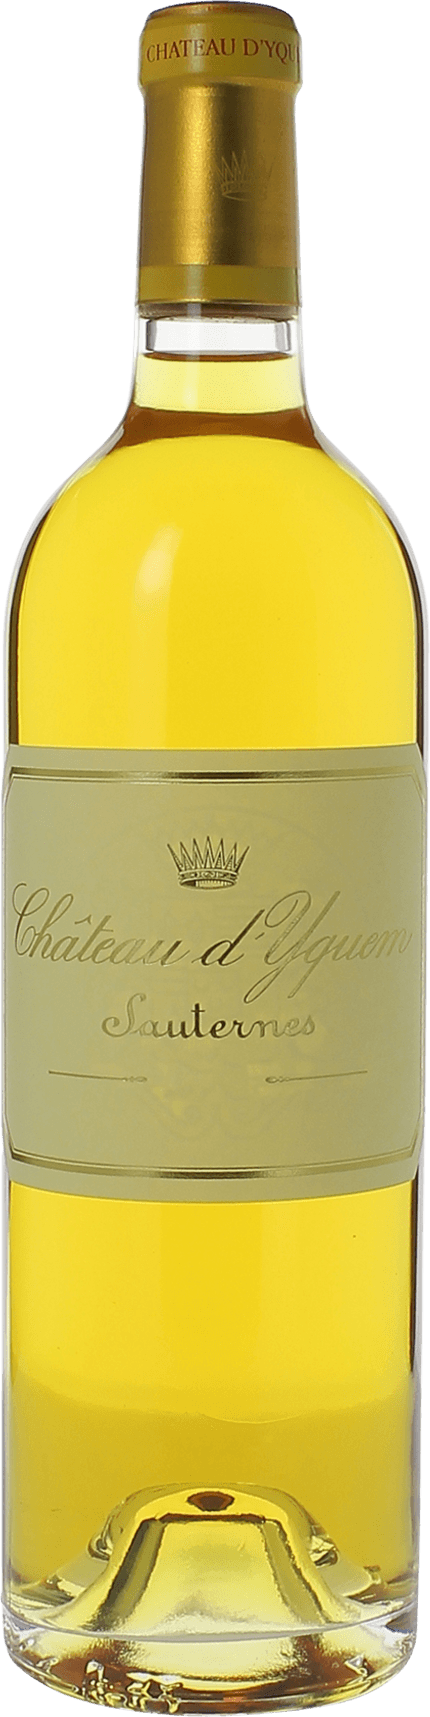 Yquem (disponible dbut fvrier) 1908 1er Grand cru class Sauternes, Bordeaux blanc